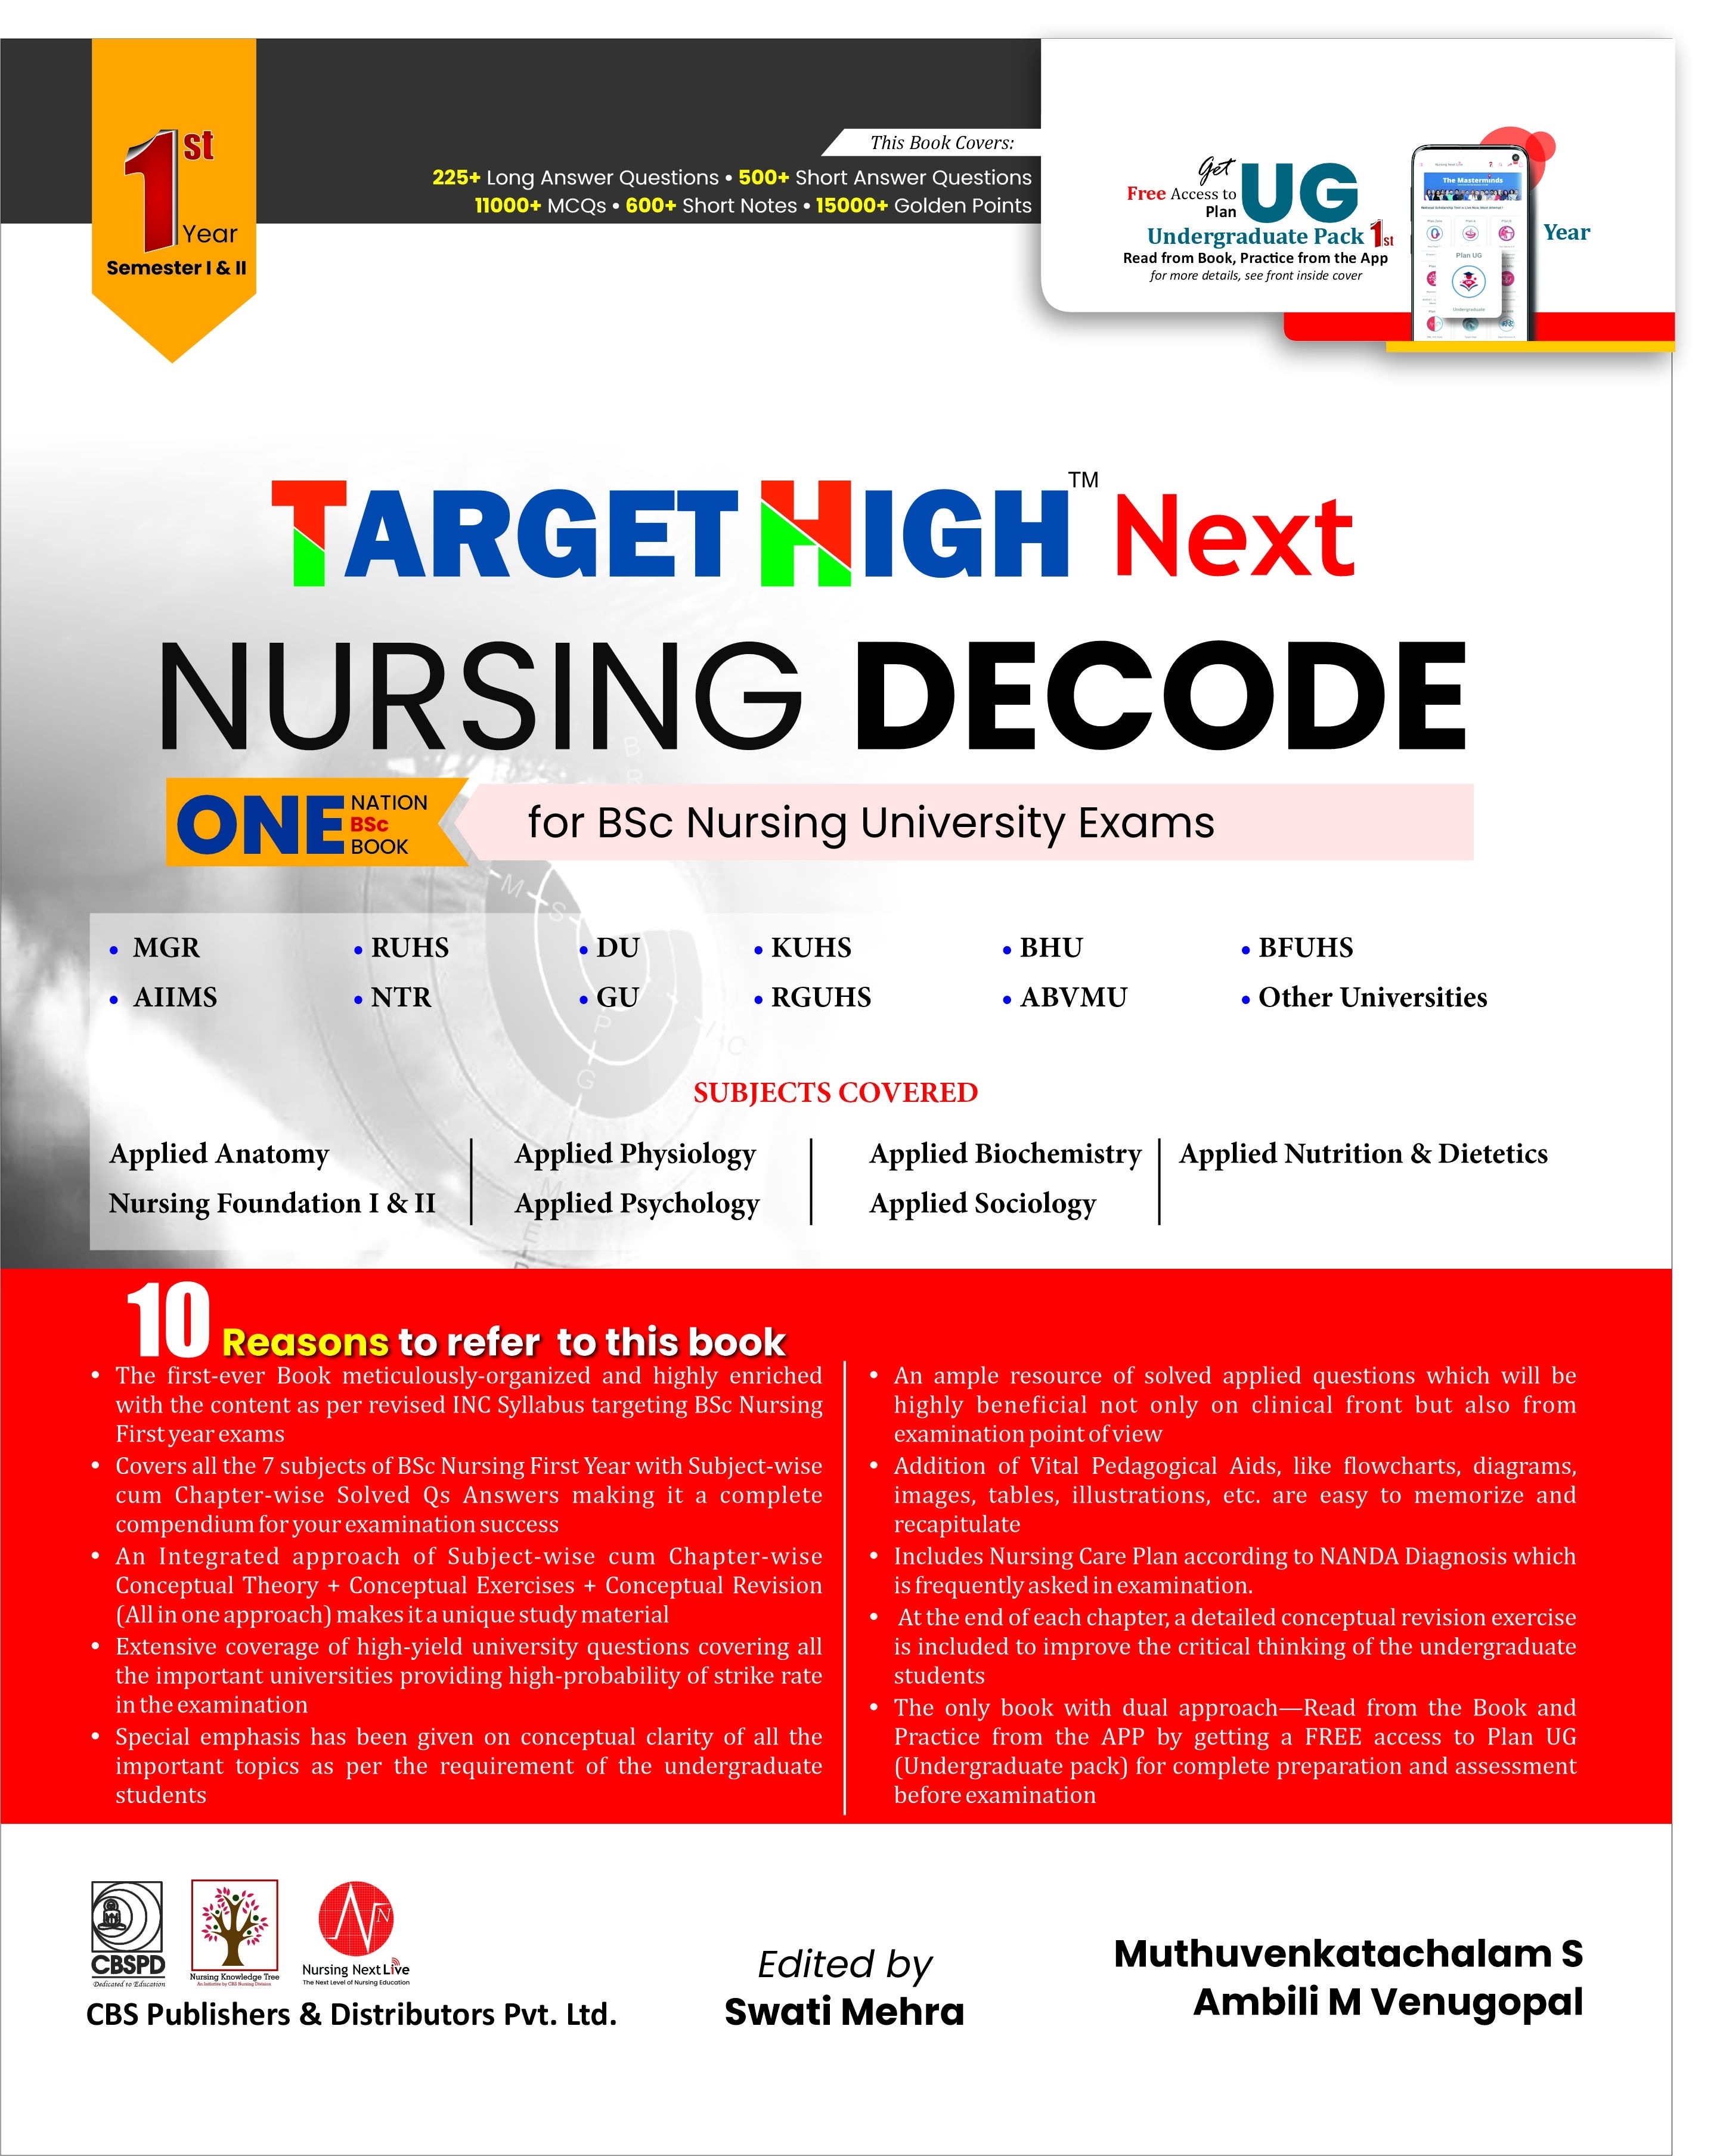 TARGET HIGH NEXT Nursing Decode First Year